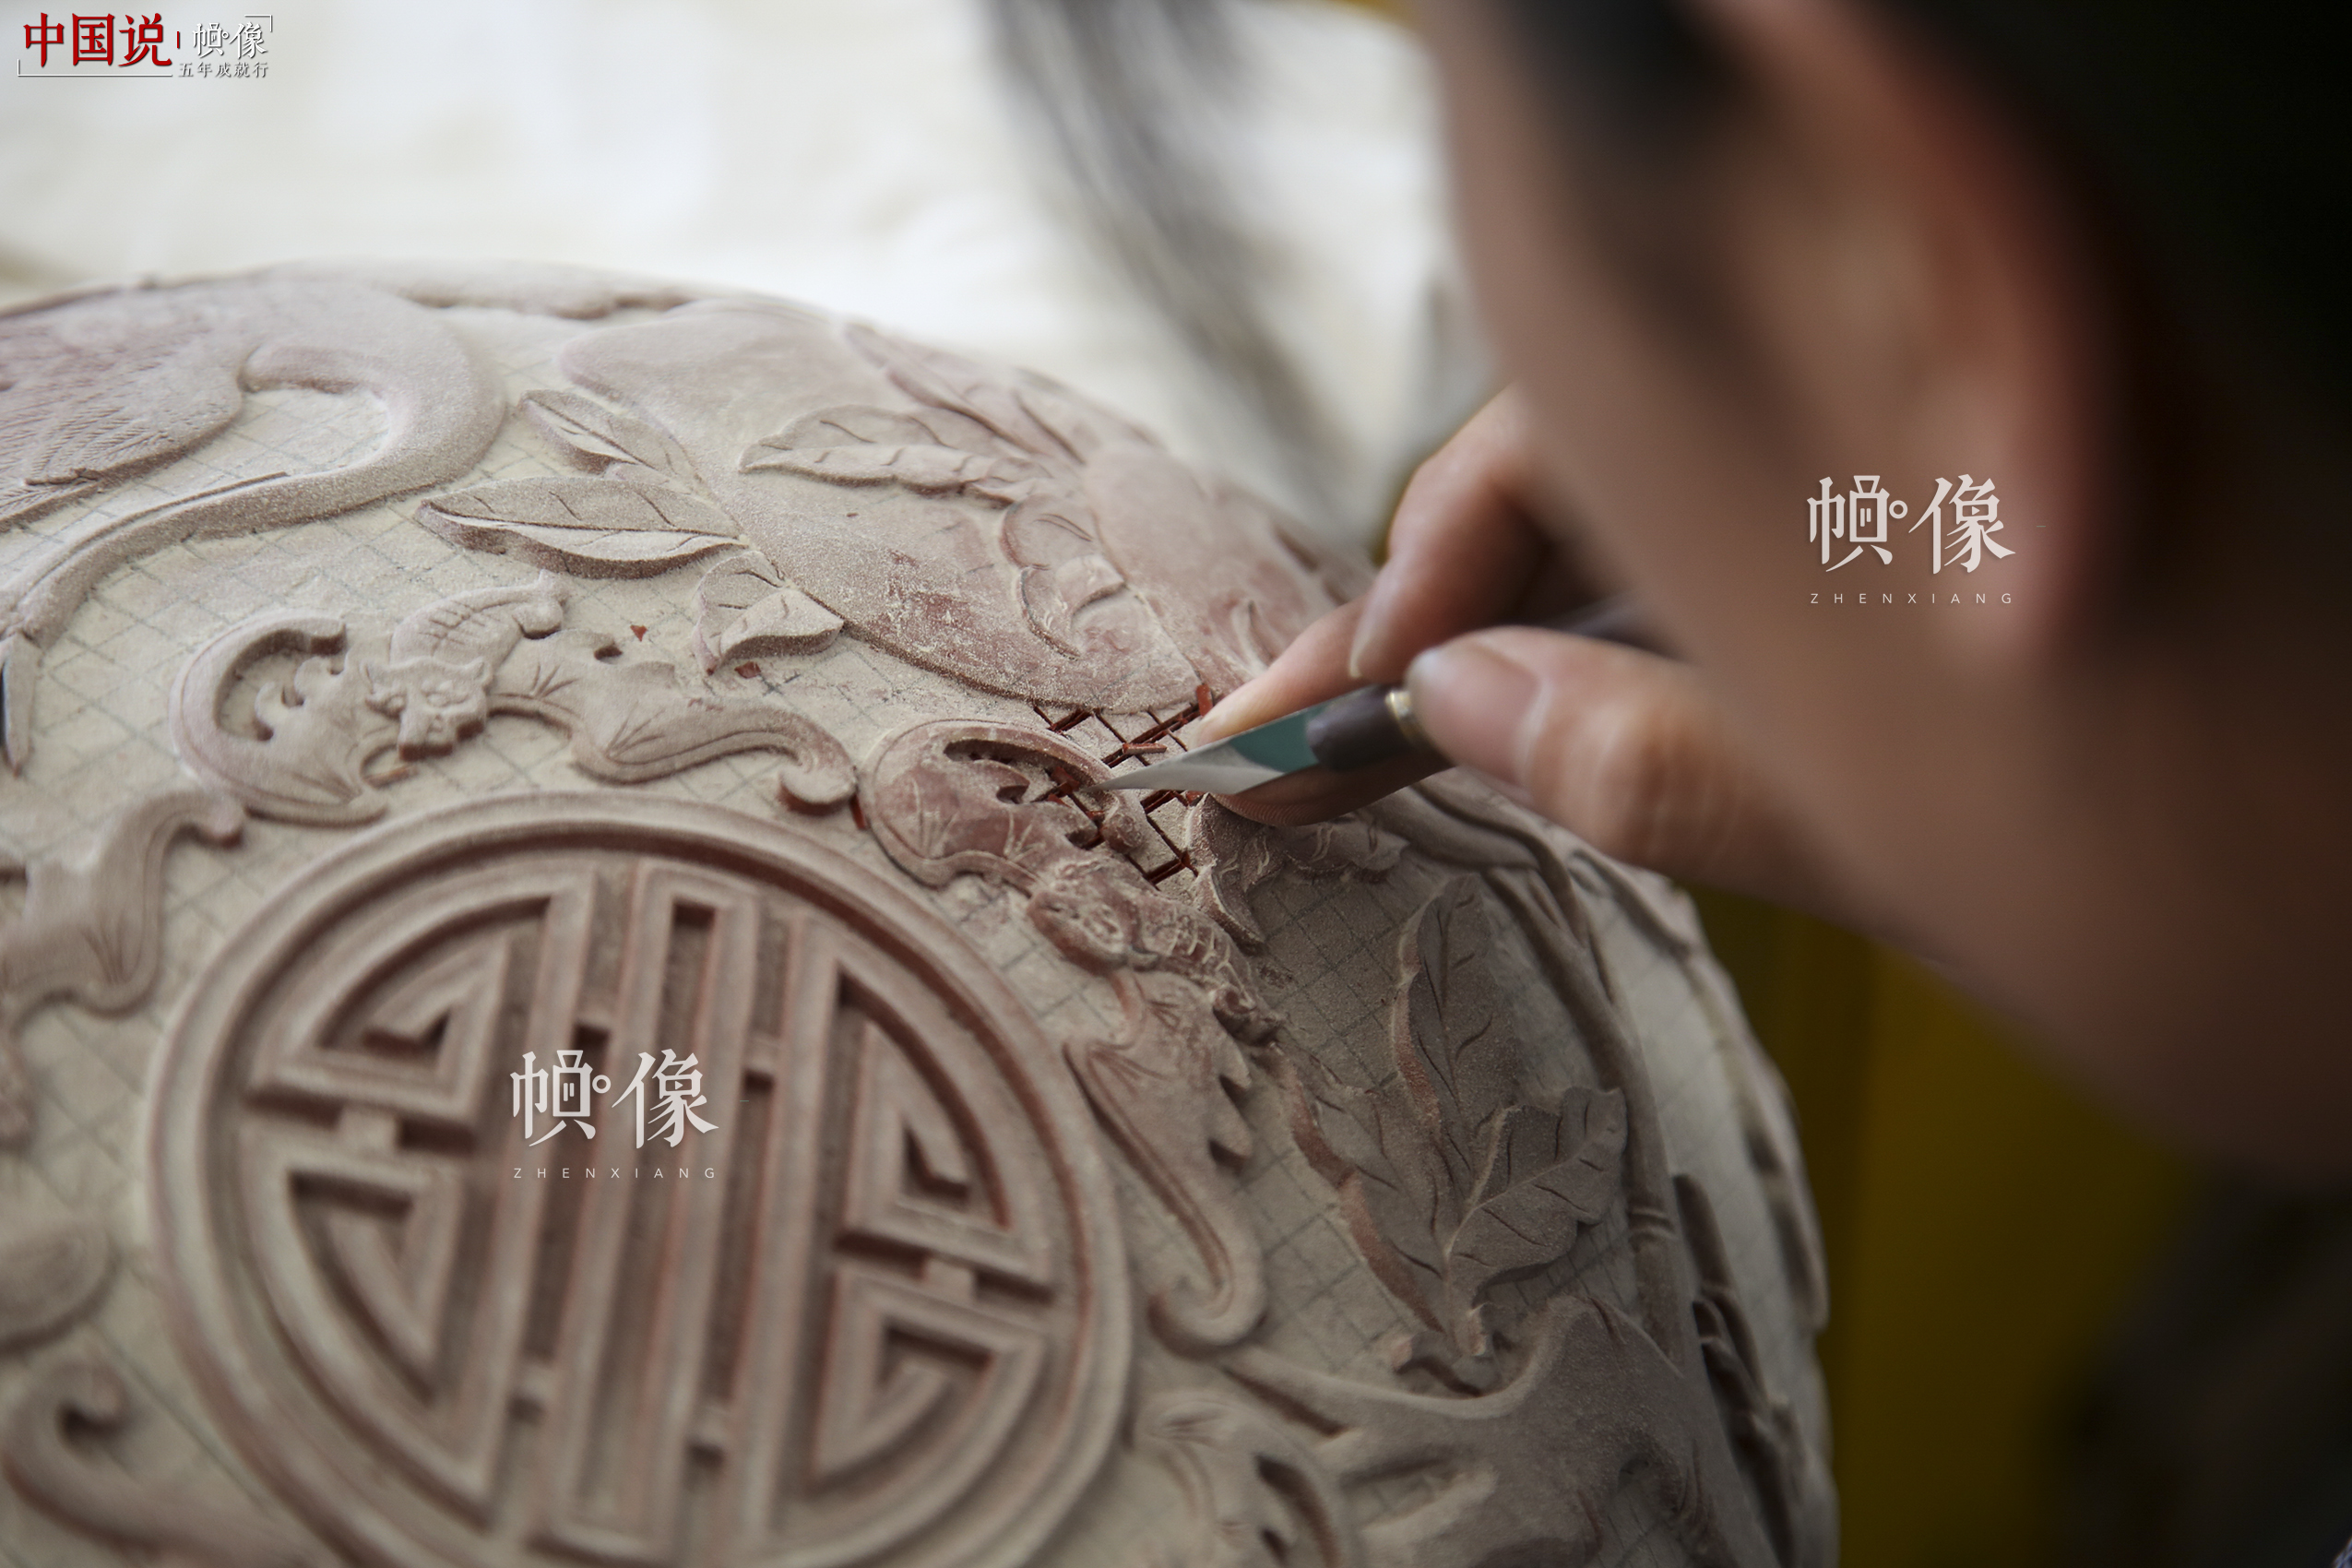 2017年9月20日，“明古斋”雕漆工厂车间，雕漆工作者用工具根据前期画好的图案将废料去掉。中国网记者 黄富友 摄 